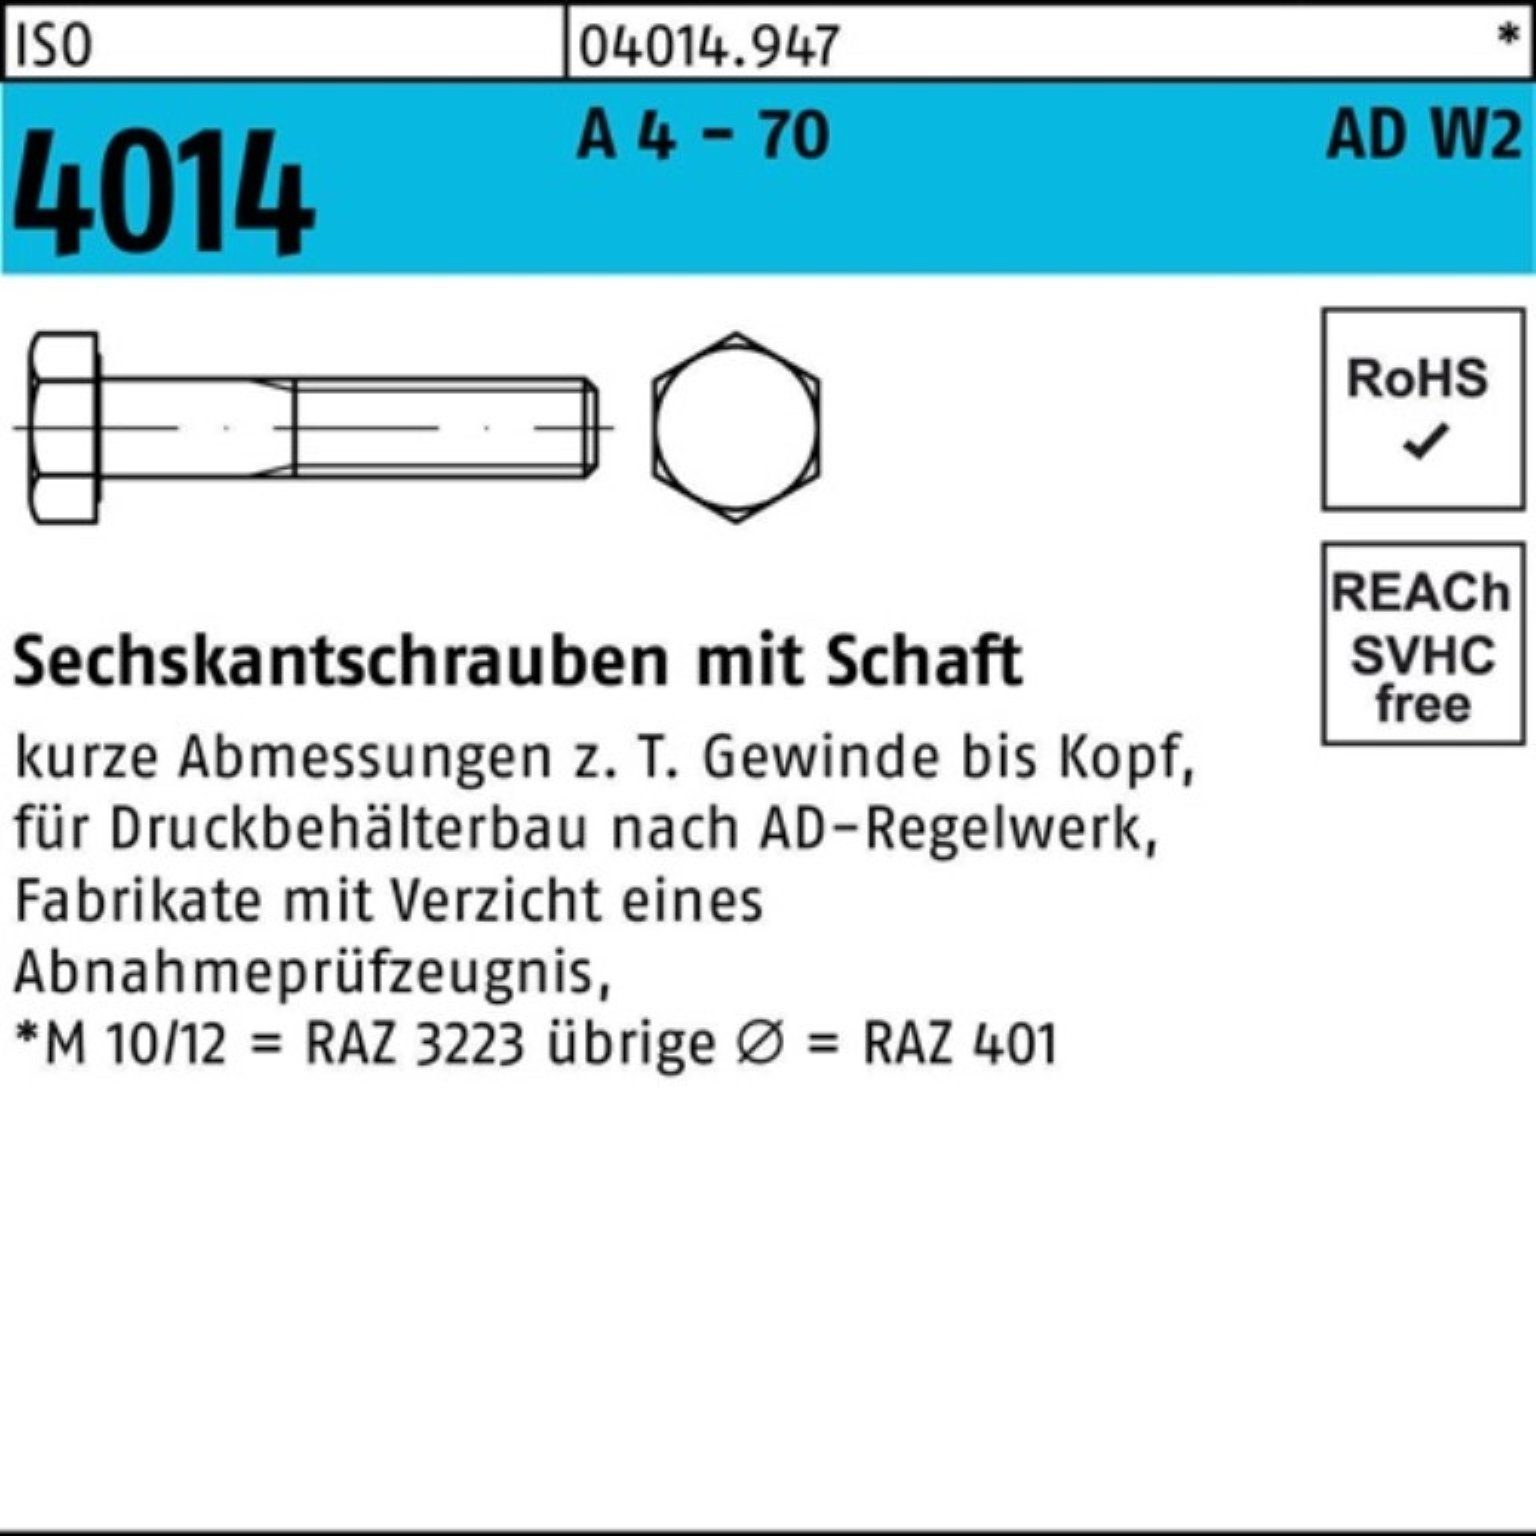 1 160 ISO 4014 Bufab - Sechskantschraube 4 100er M16x 70 Pack A Schaft AD-W2 Sechskantschraube